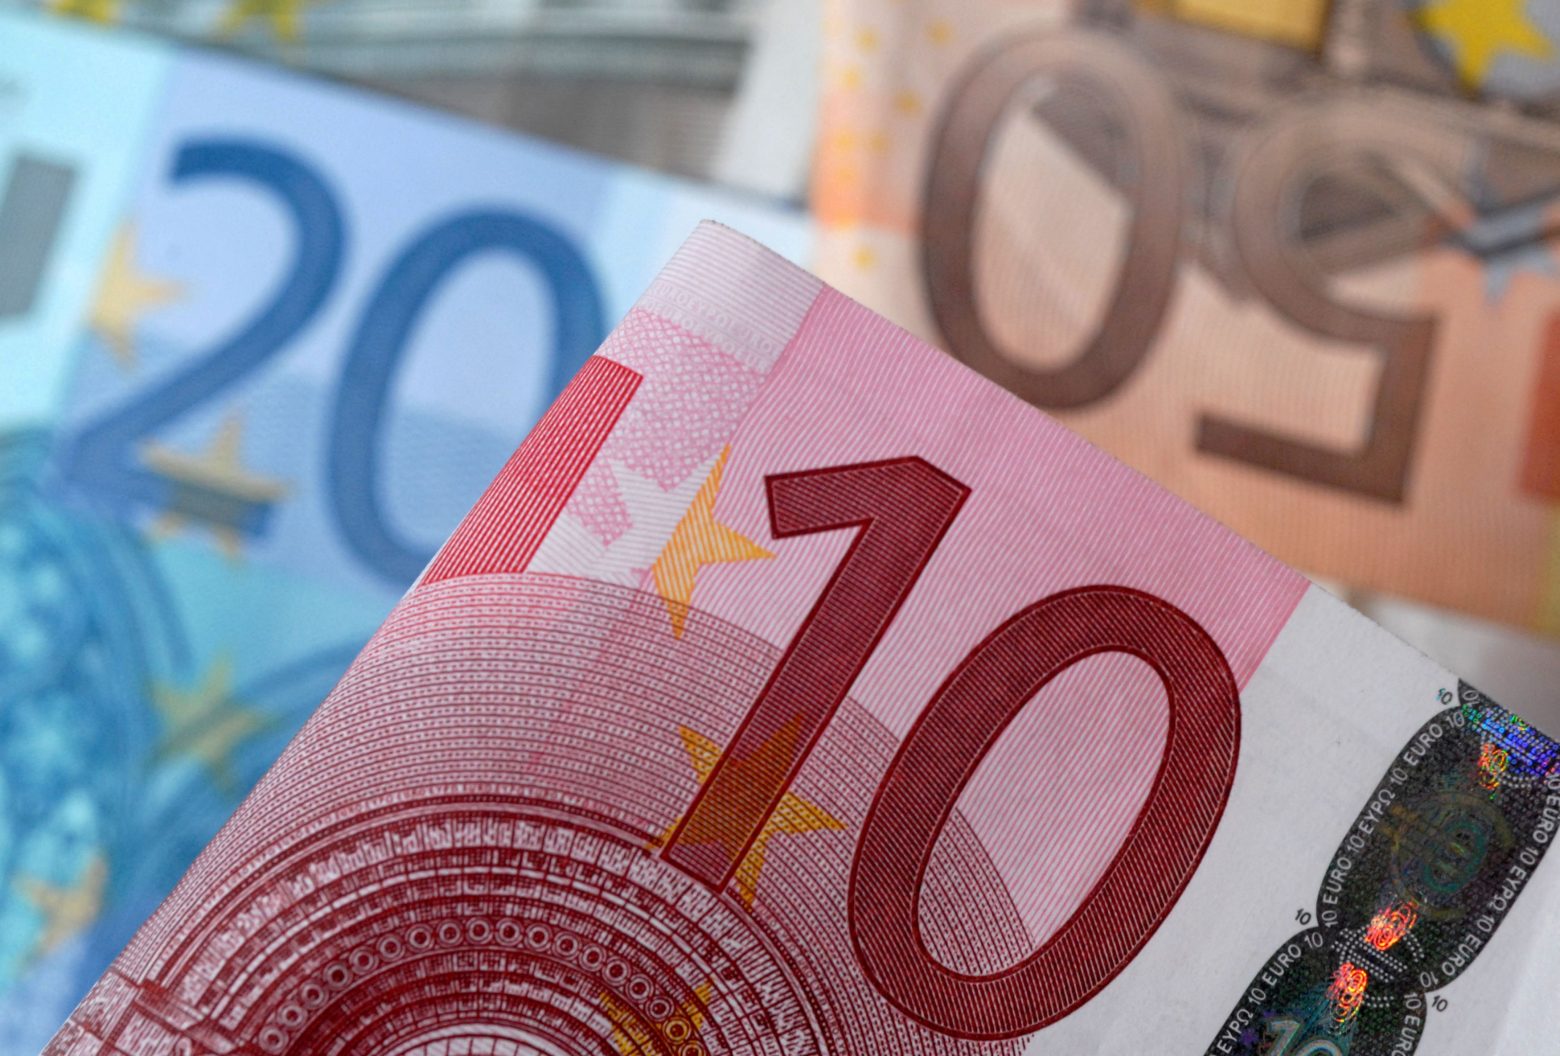 Ευρωζώνη: Αυξήθηκαν τα επιτόκια σε δάνεια και καταθέσεις τον Ιούνιο  